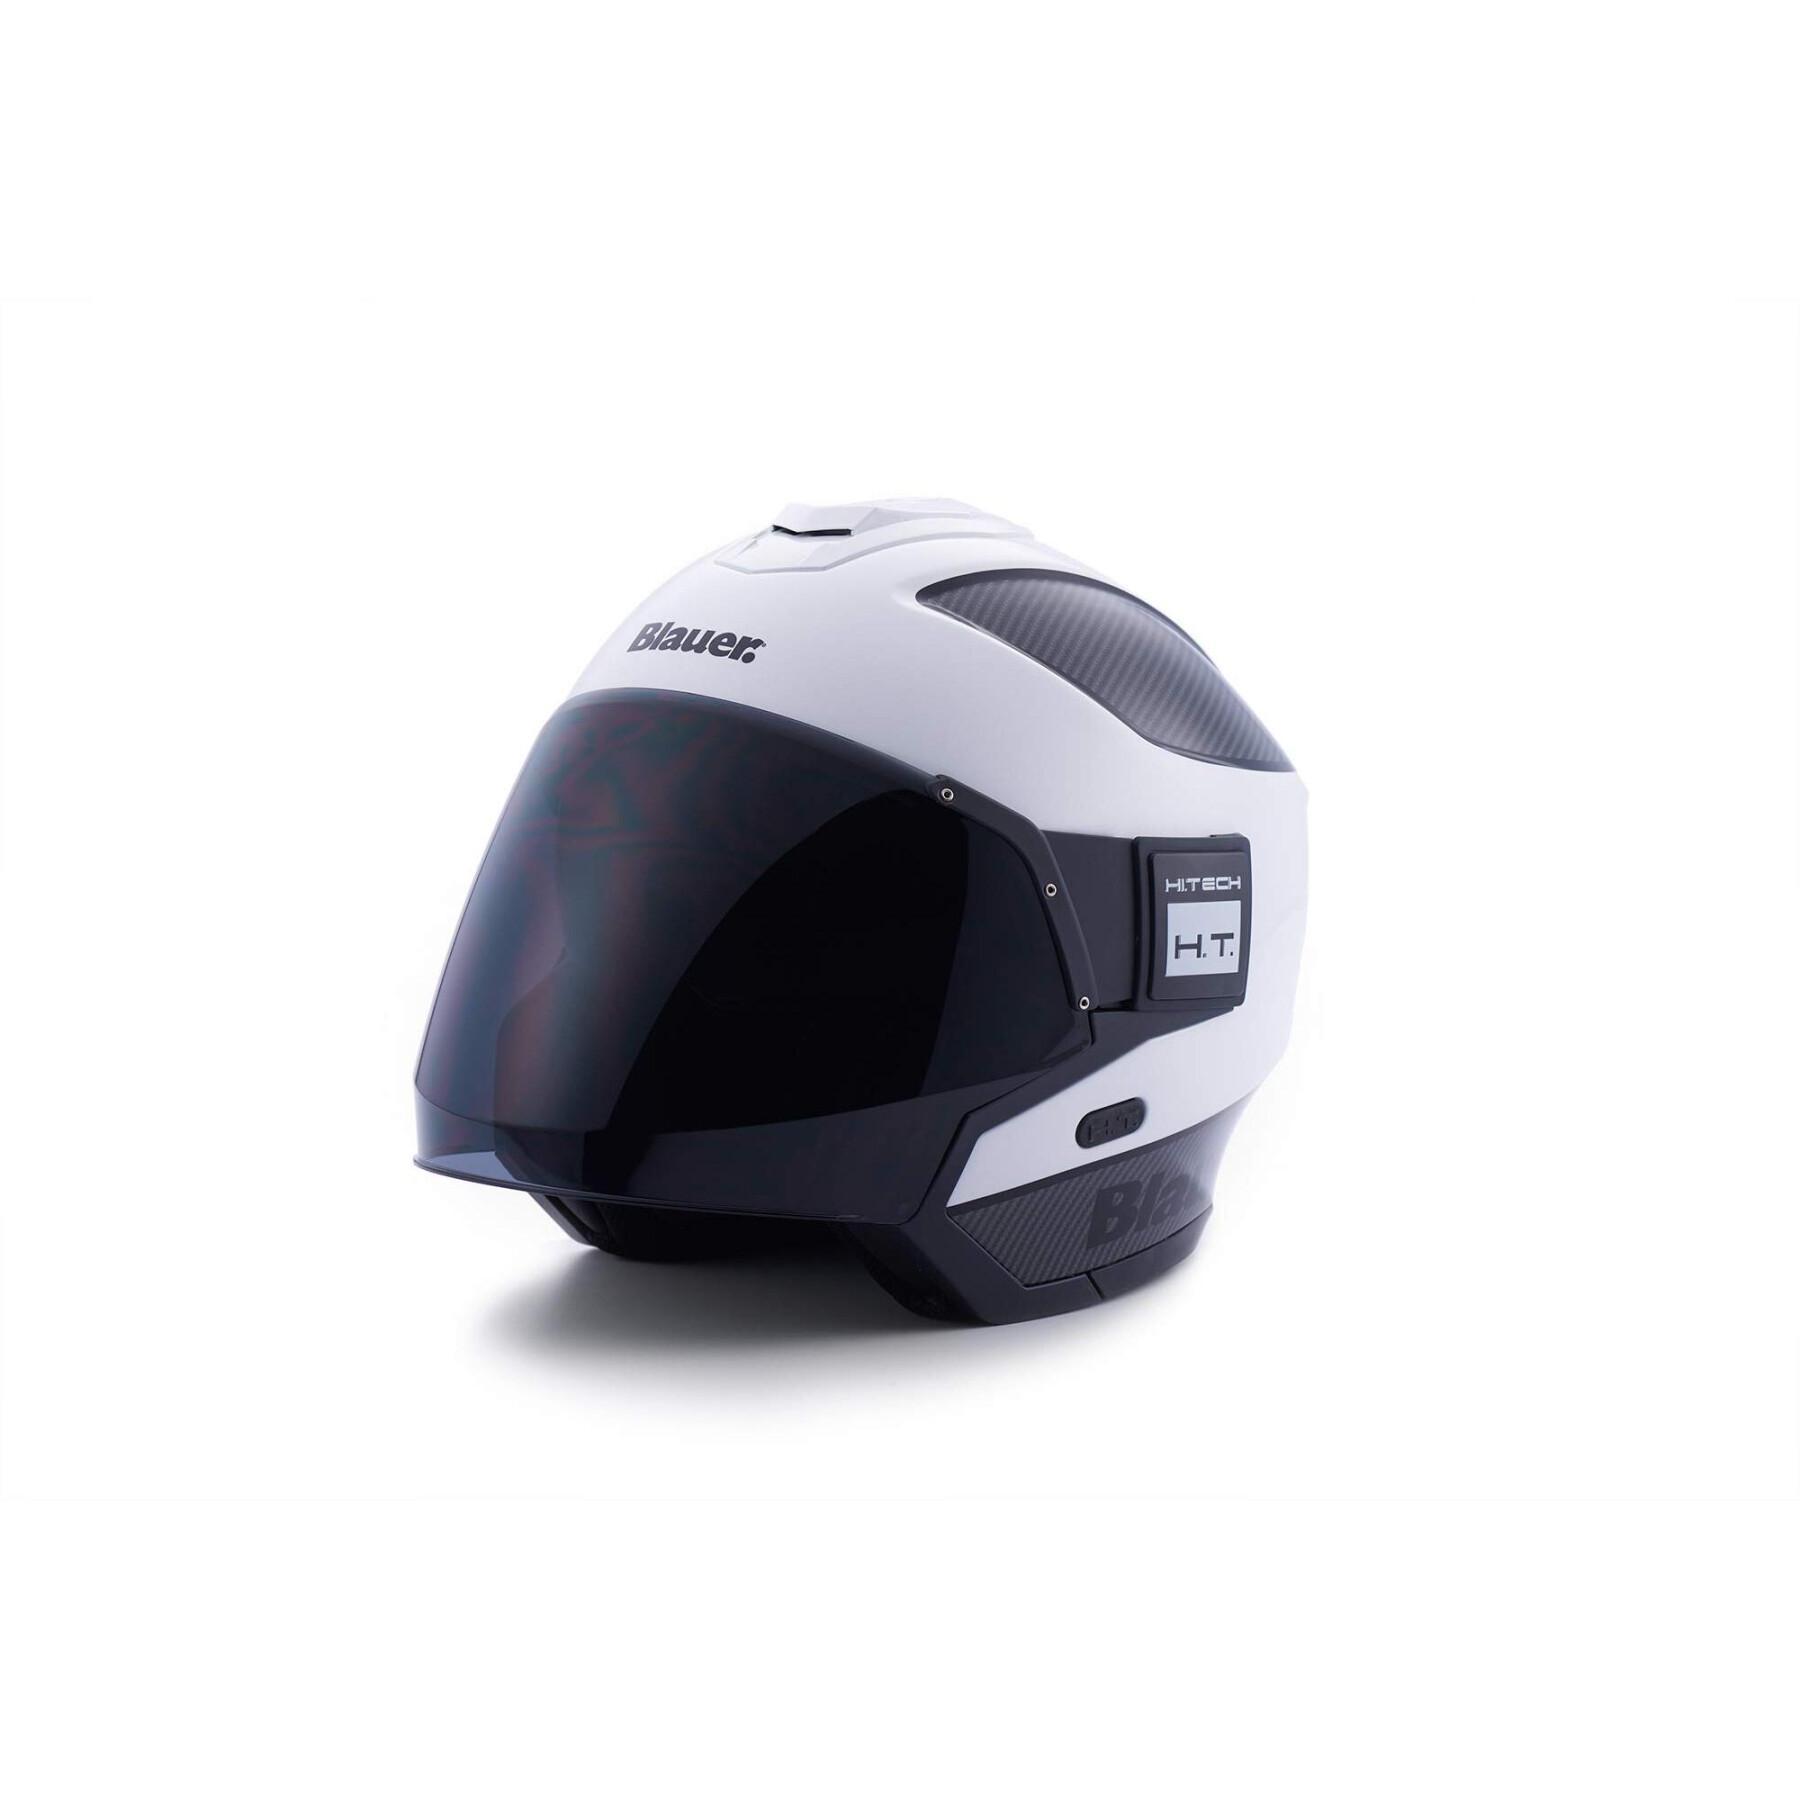 Jet motorcycle helmet Blauer Solo Btr